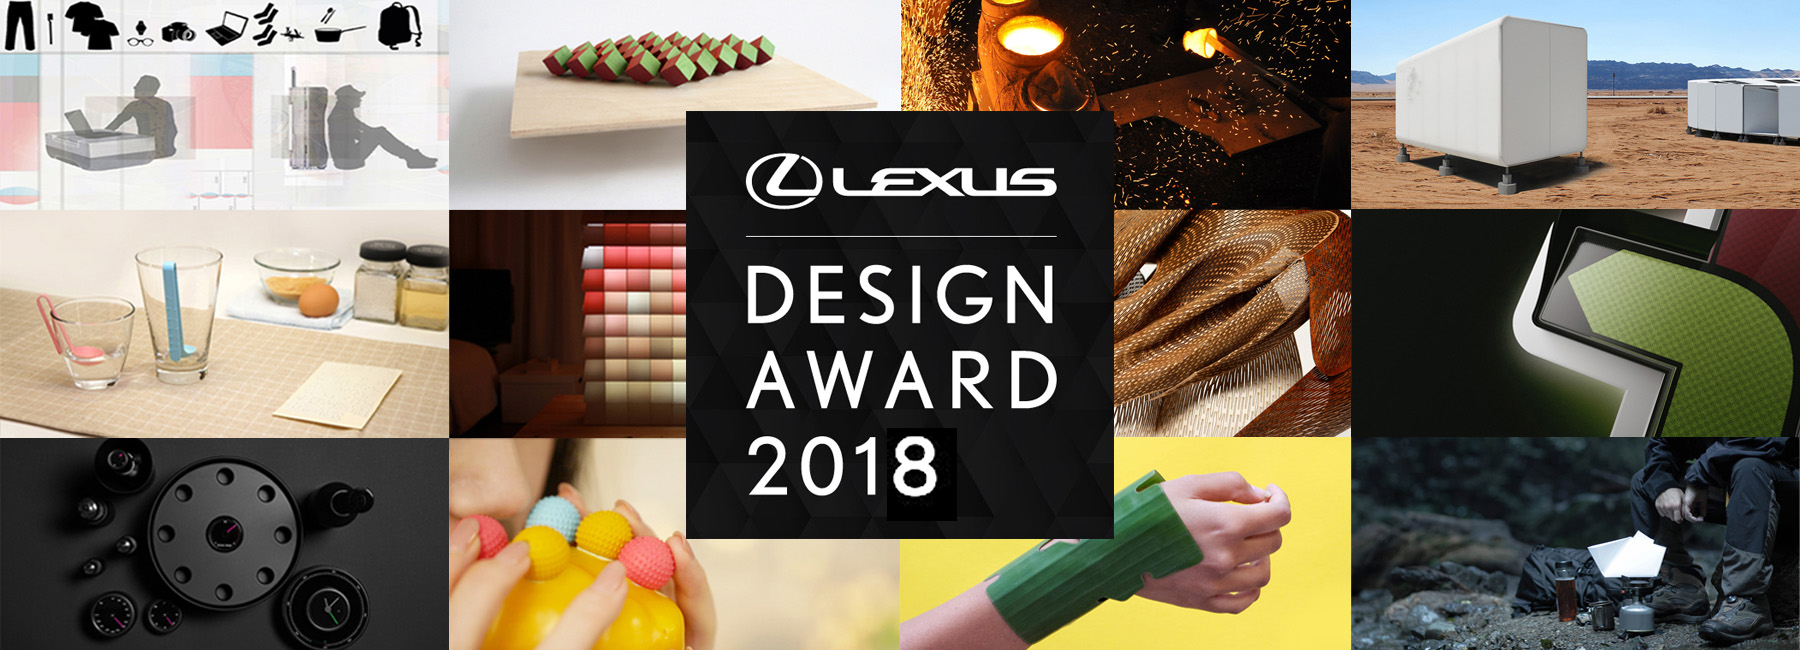 El concepto de “CO-” sirve de inspiración para el Lexus Design Award 2018.  Abierto el período de inscripción.